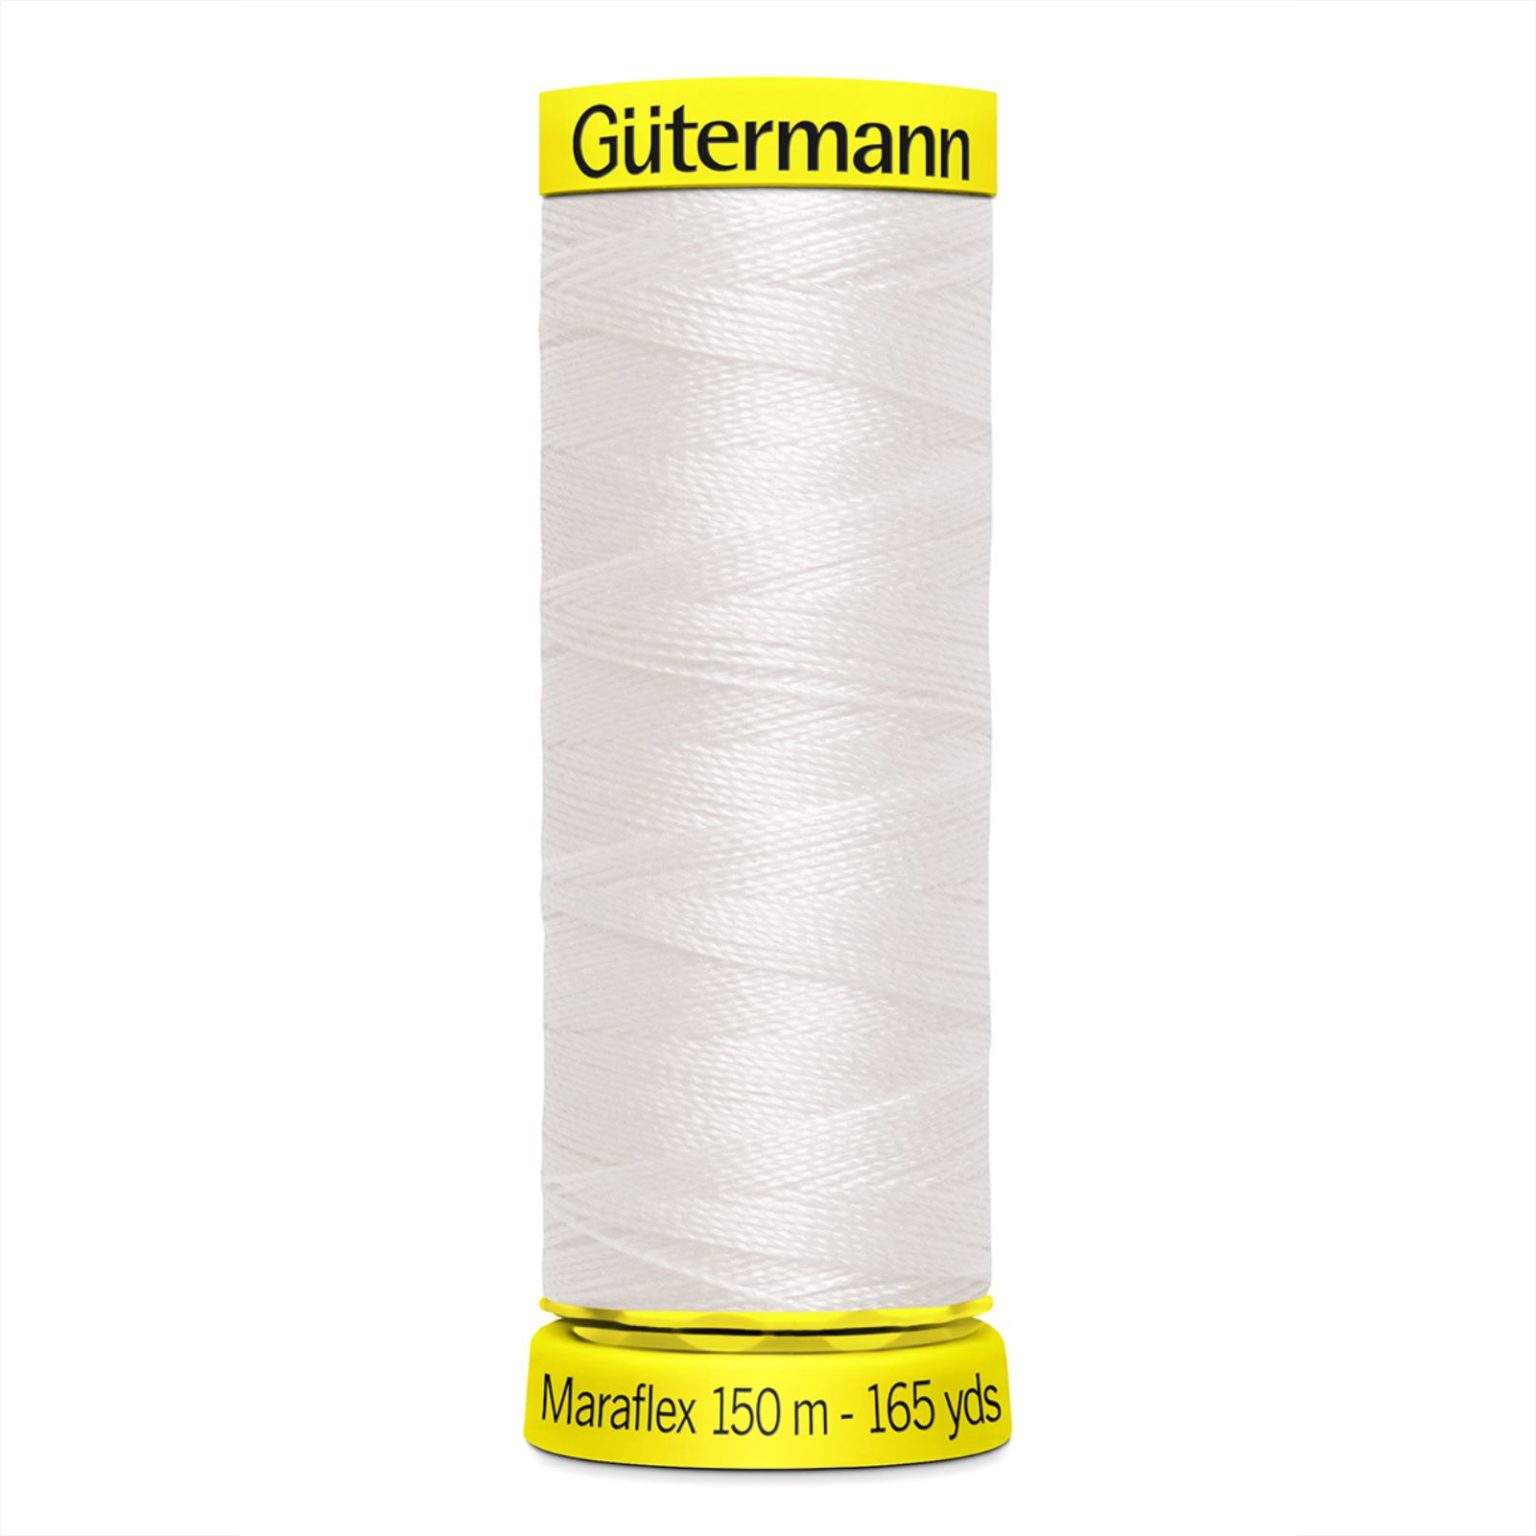 Gutermann Maraflex Thread | More Sewing